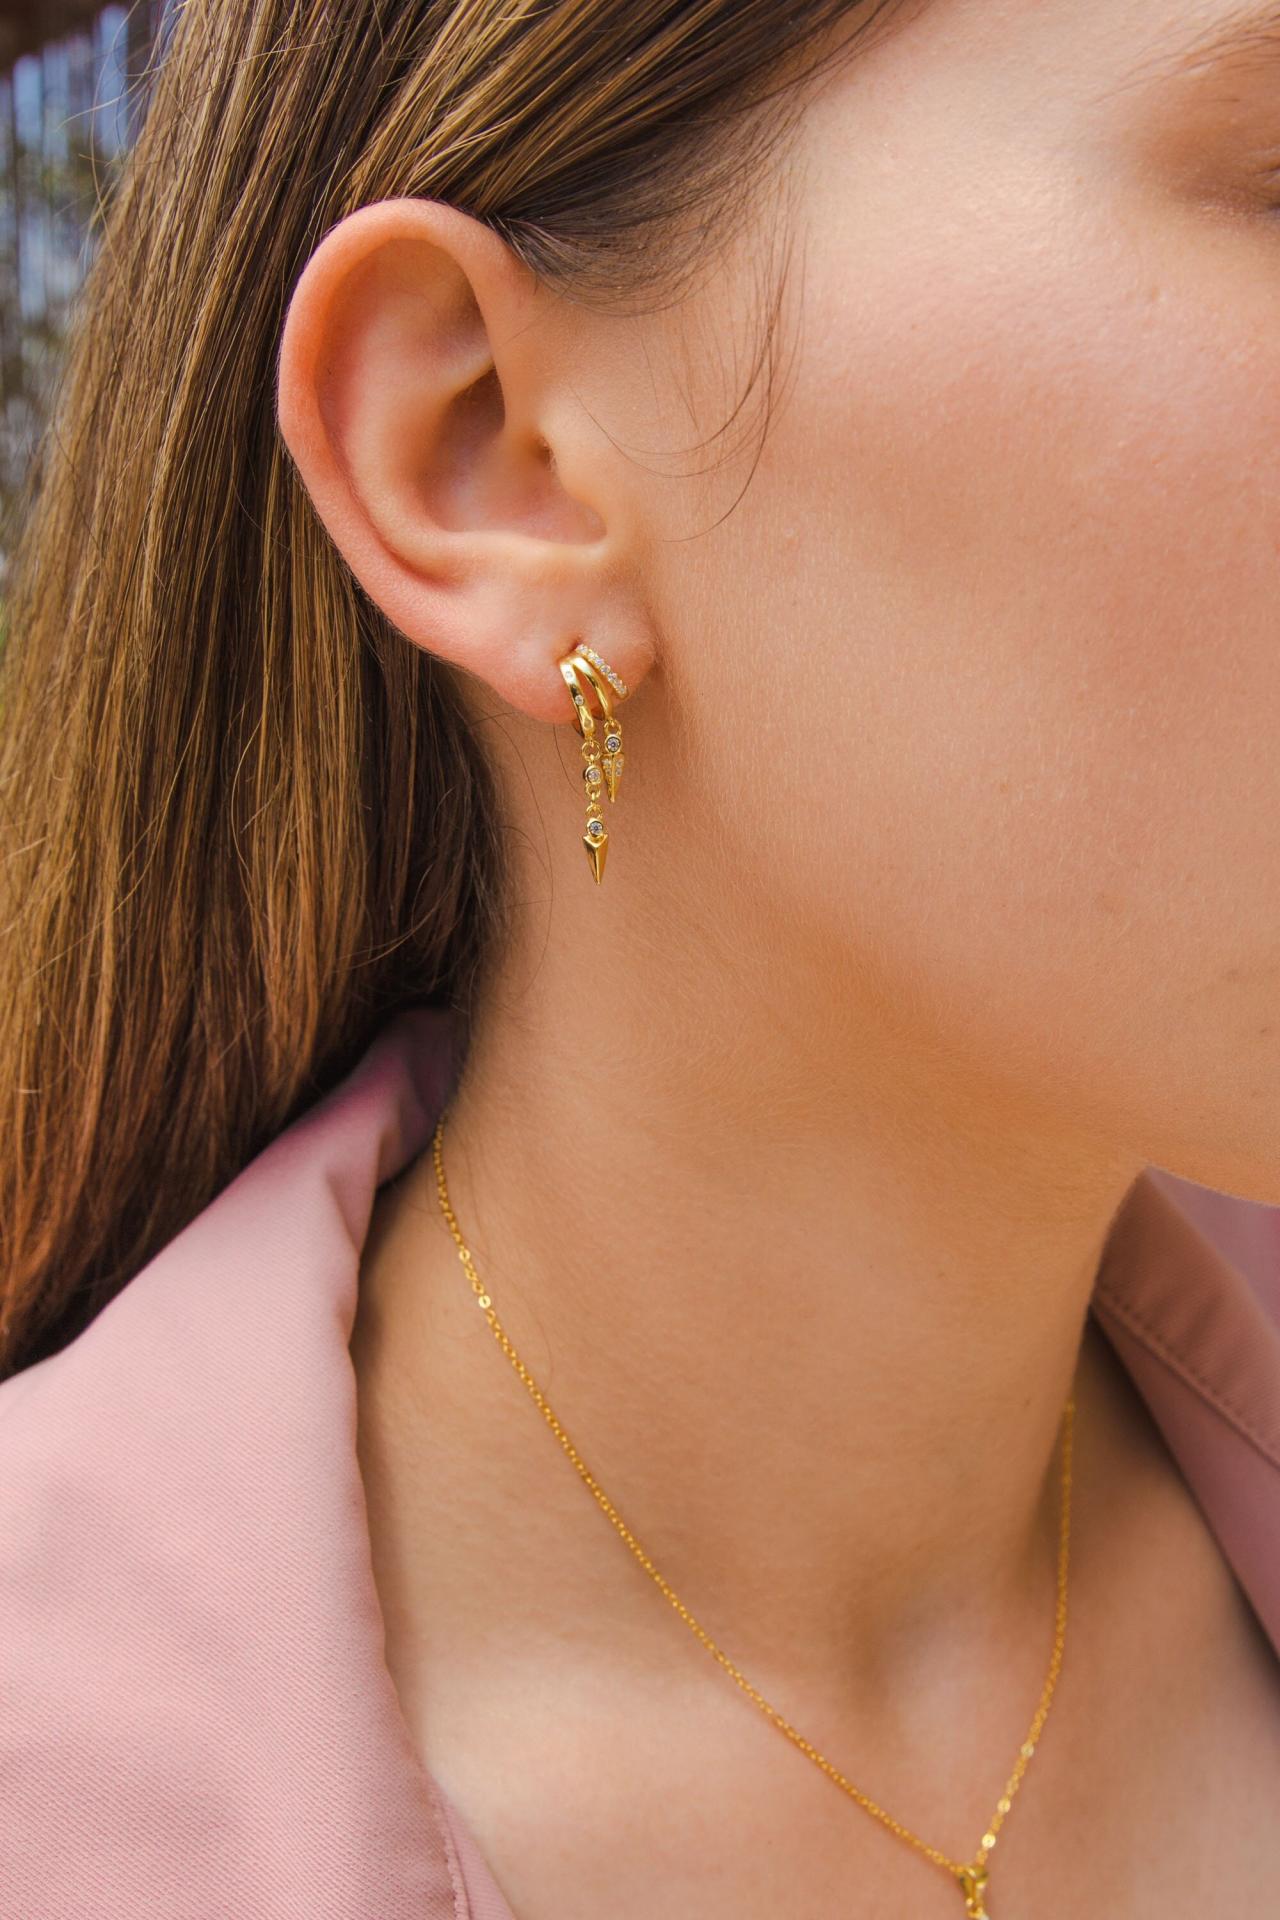 Gold Tassel Earrings, Cz Tassel Earrings, Gold Cz Stud Earrings, Sparkling Earrings, Gold Cz Dangle Earrings, Elegant Earrings, Unique